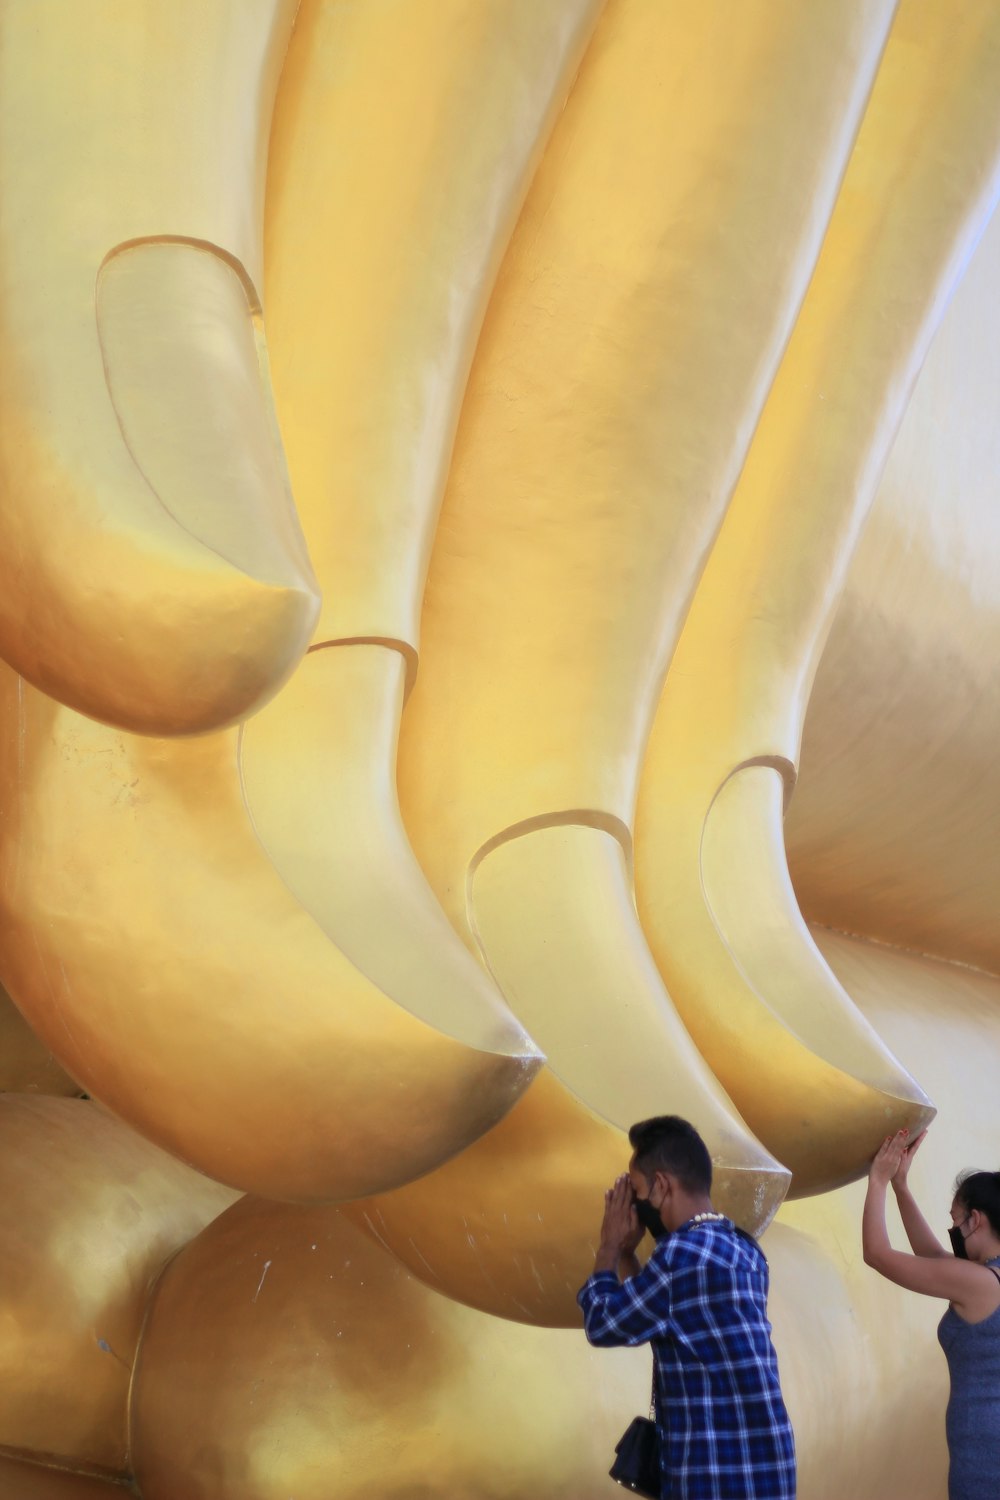 Un hombre y una mujer parados frente a una escultura gigante de plátano